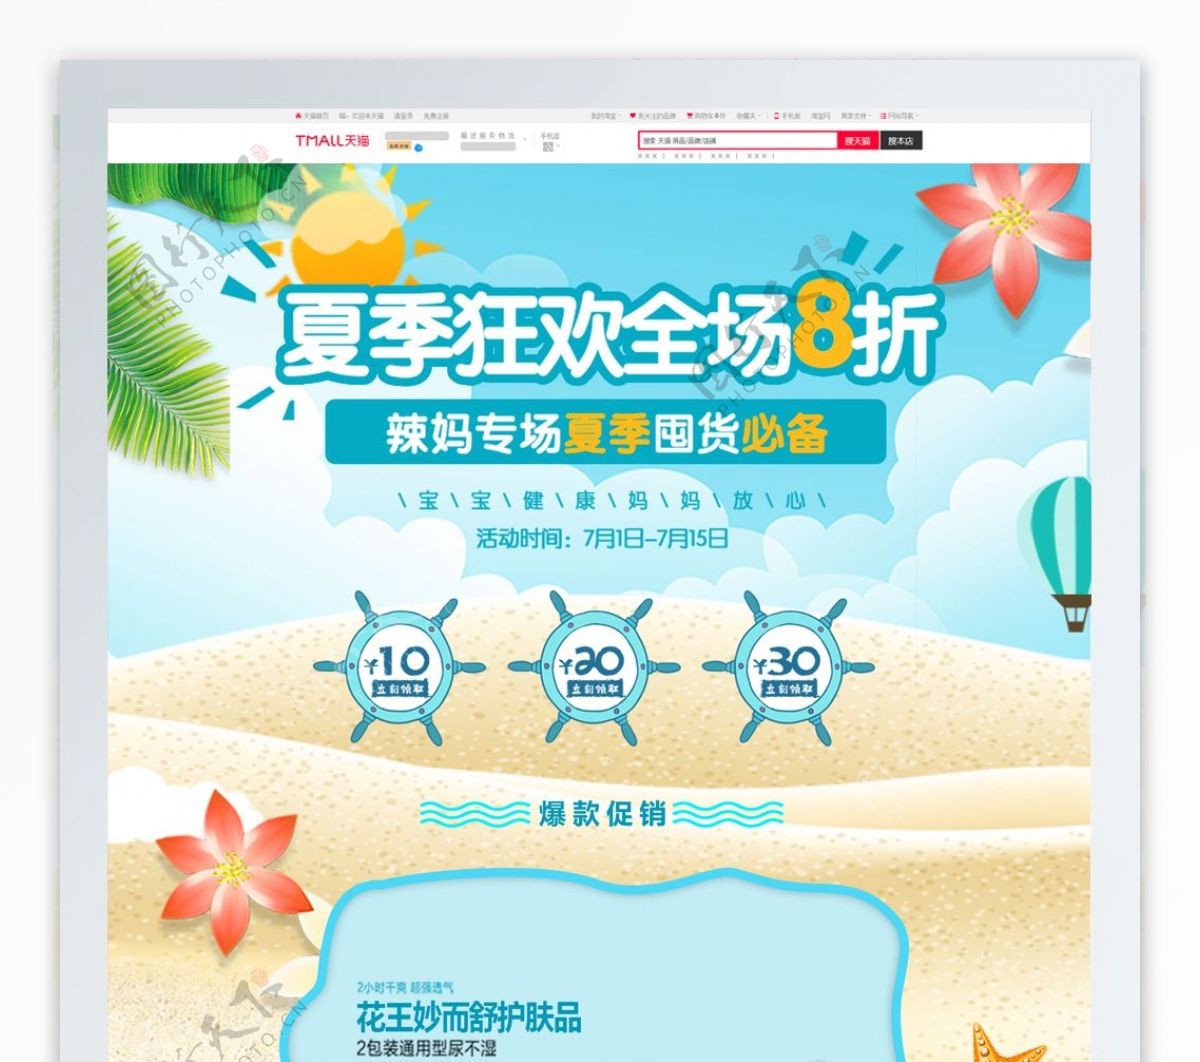 清新夏季夏日促销母婴用品淘宝首页